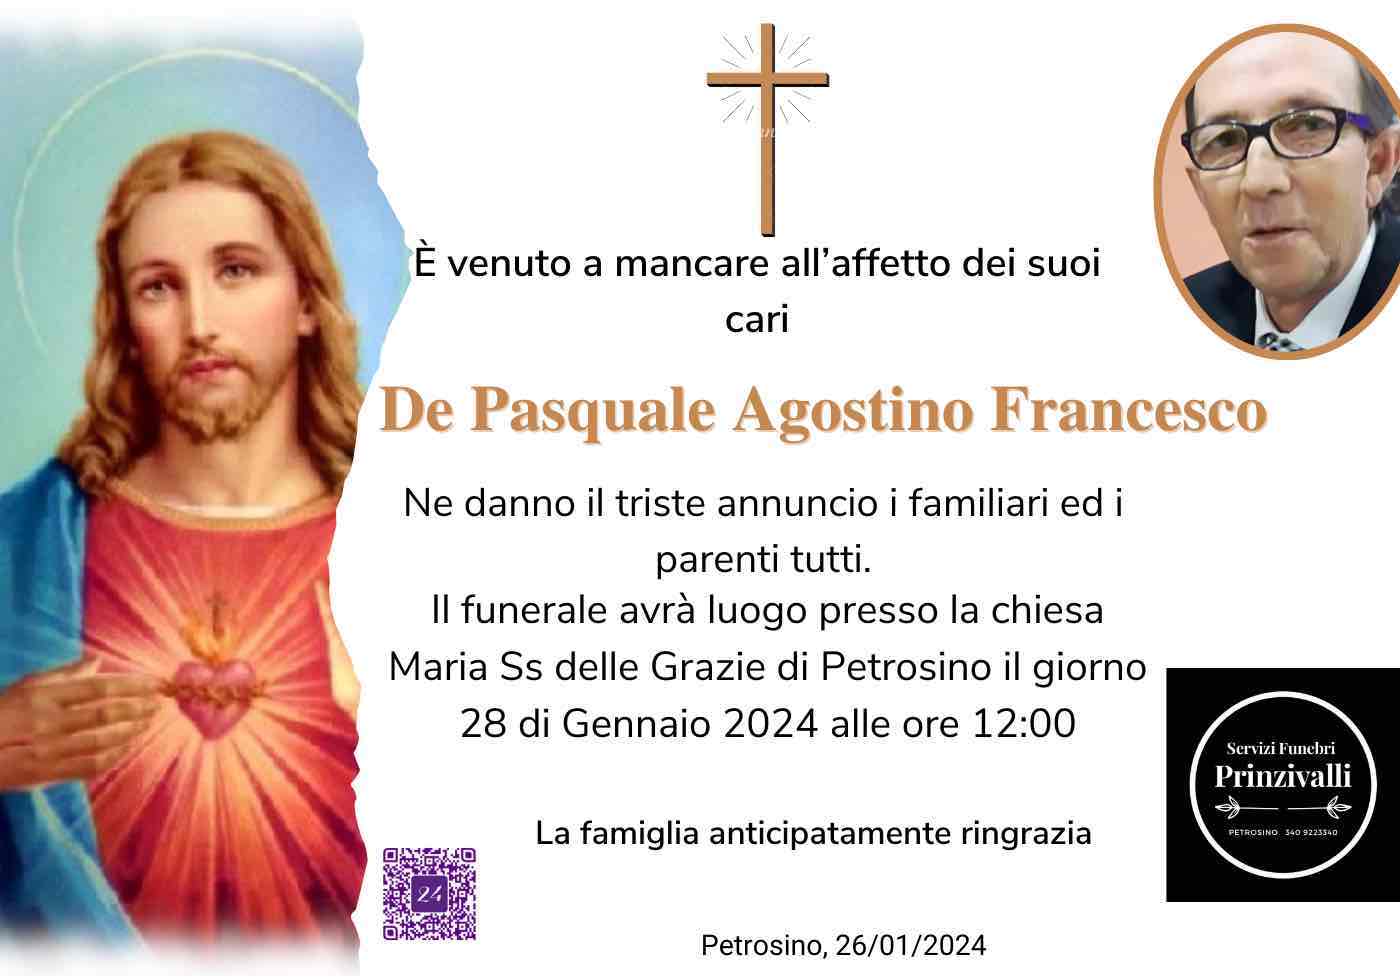 Agostino Francesco De Pasquale